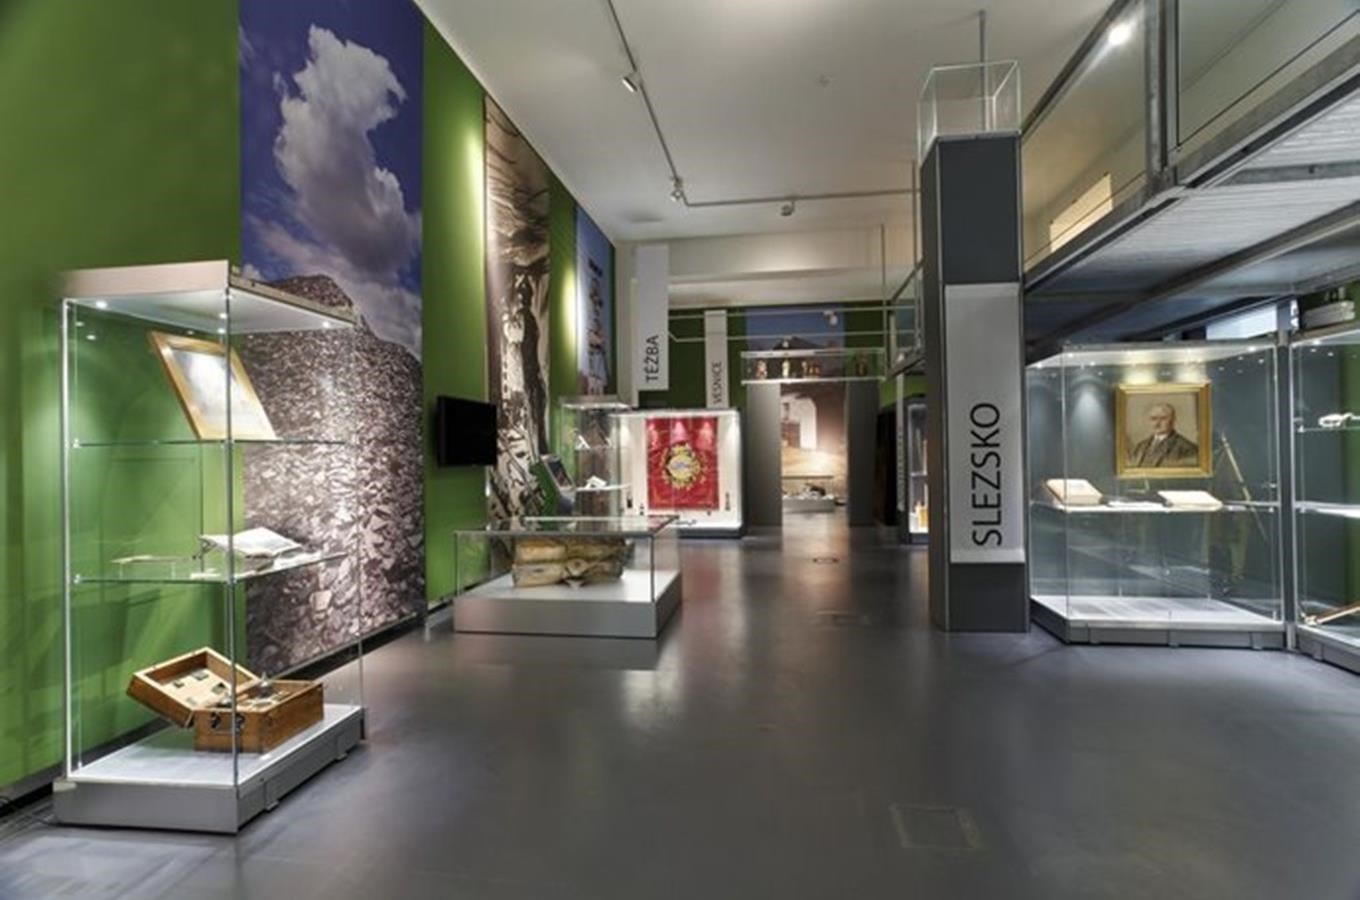 Slezské zemské muzeum - nejstarší muzeum v Cesku